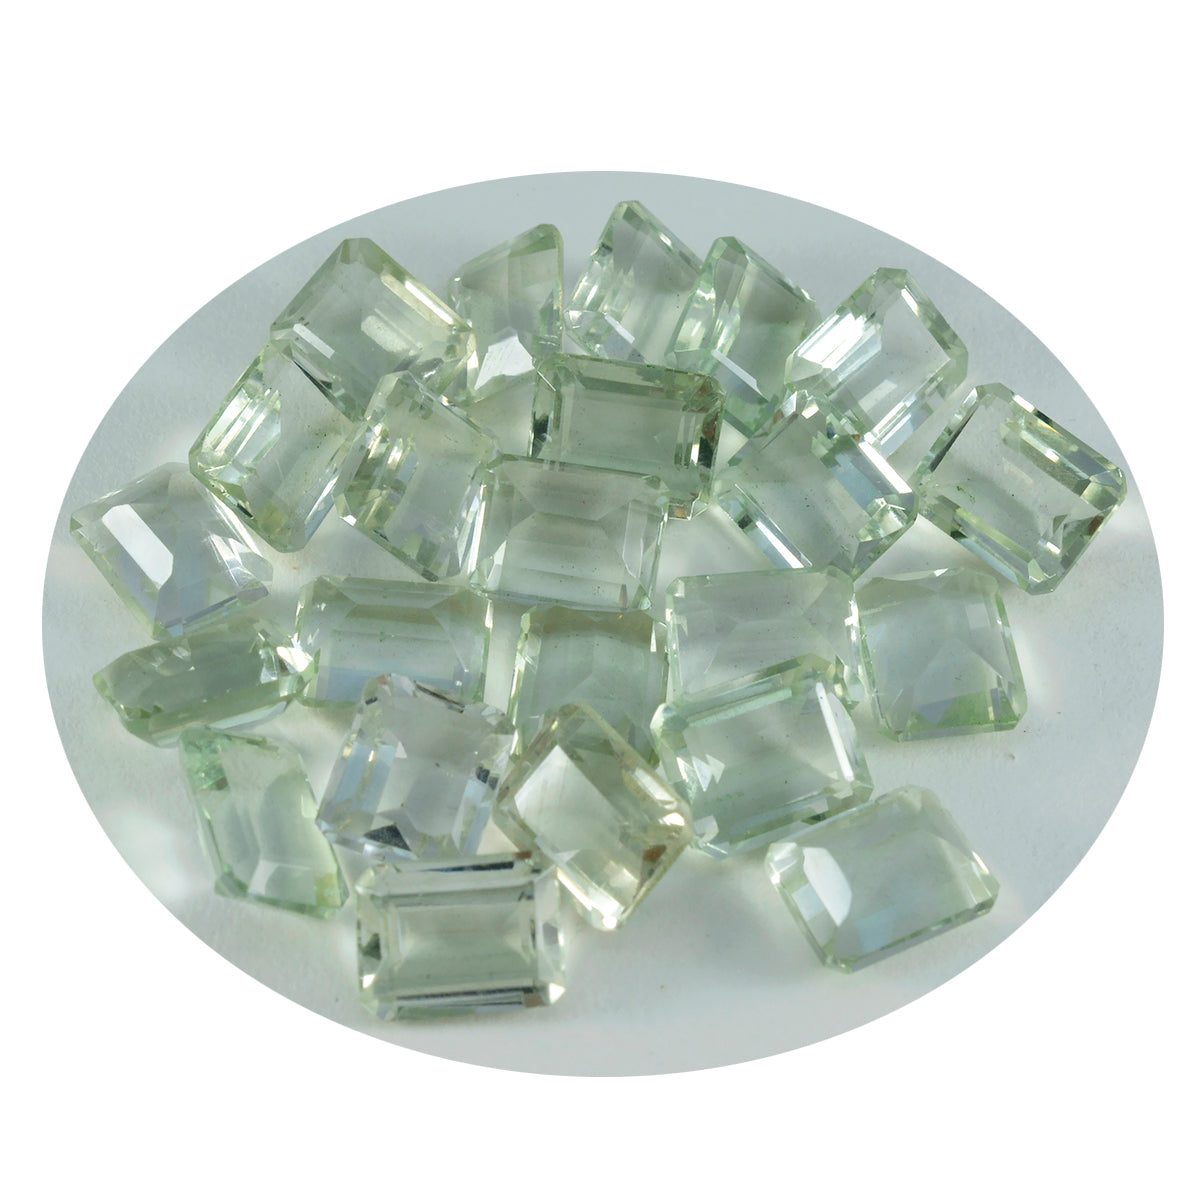 riyogems 1 шт., зеленый аметист, ограненный, восьмиугольная форма, 7x9 мм, прекрасное качество, россыпь драгоценных камней